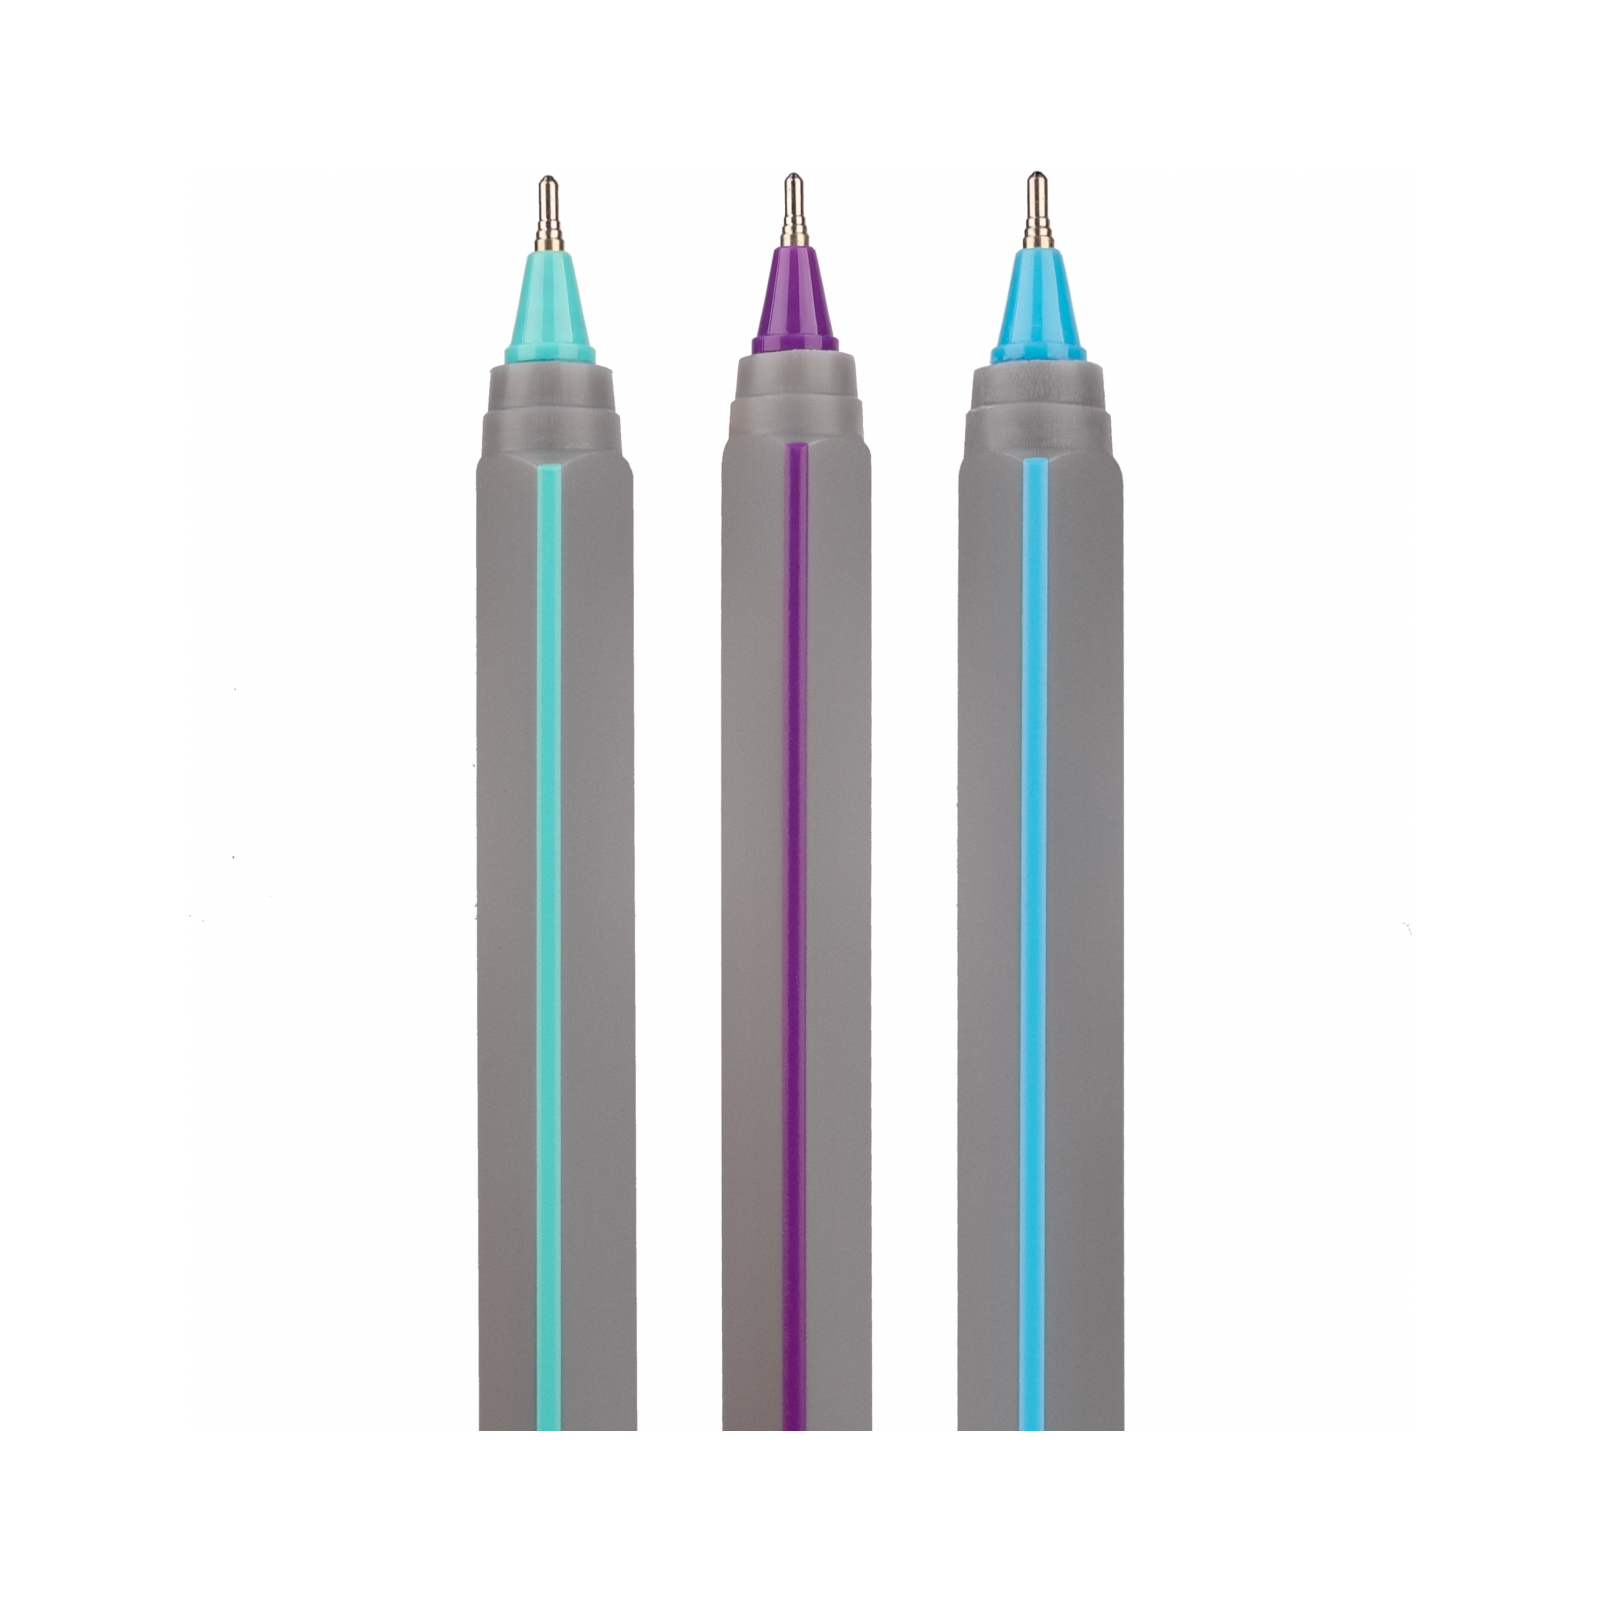 Ручка шариковая Yes Triangular Gray 0,7 мм синяя (412103) изображение 3